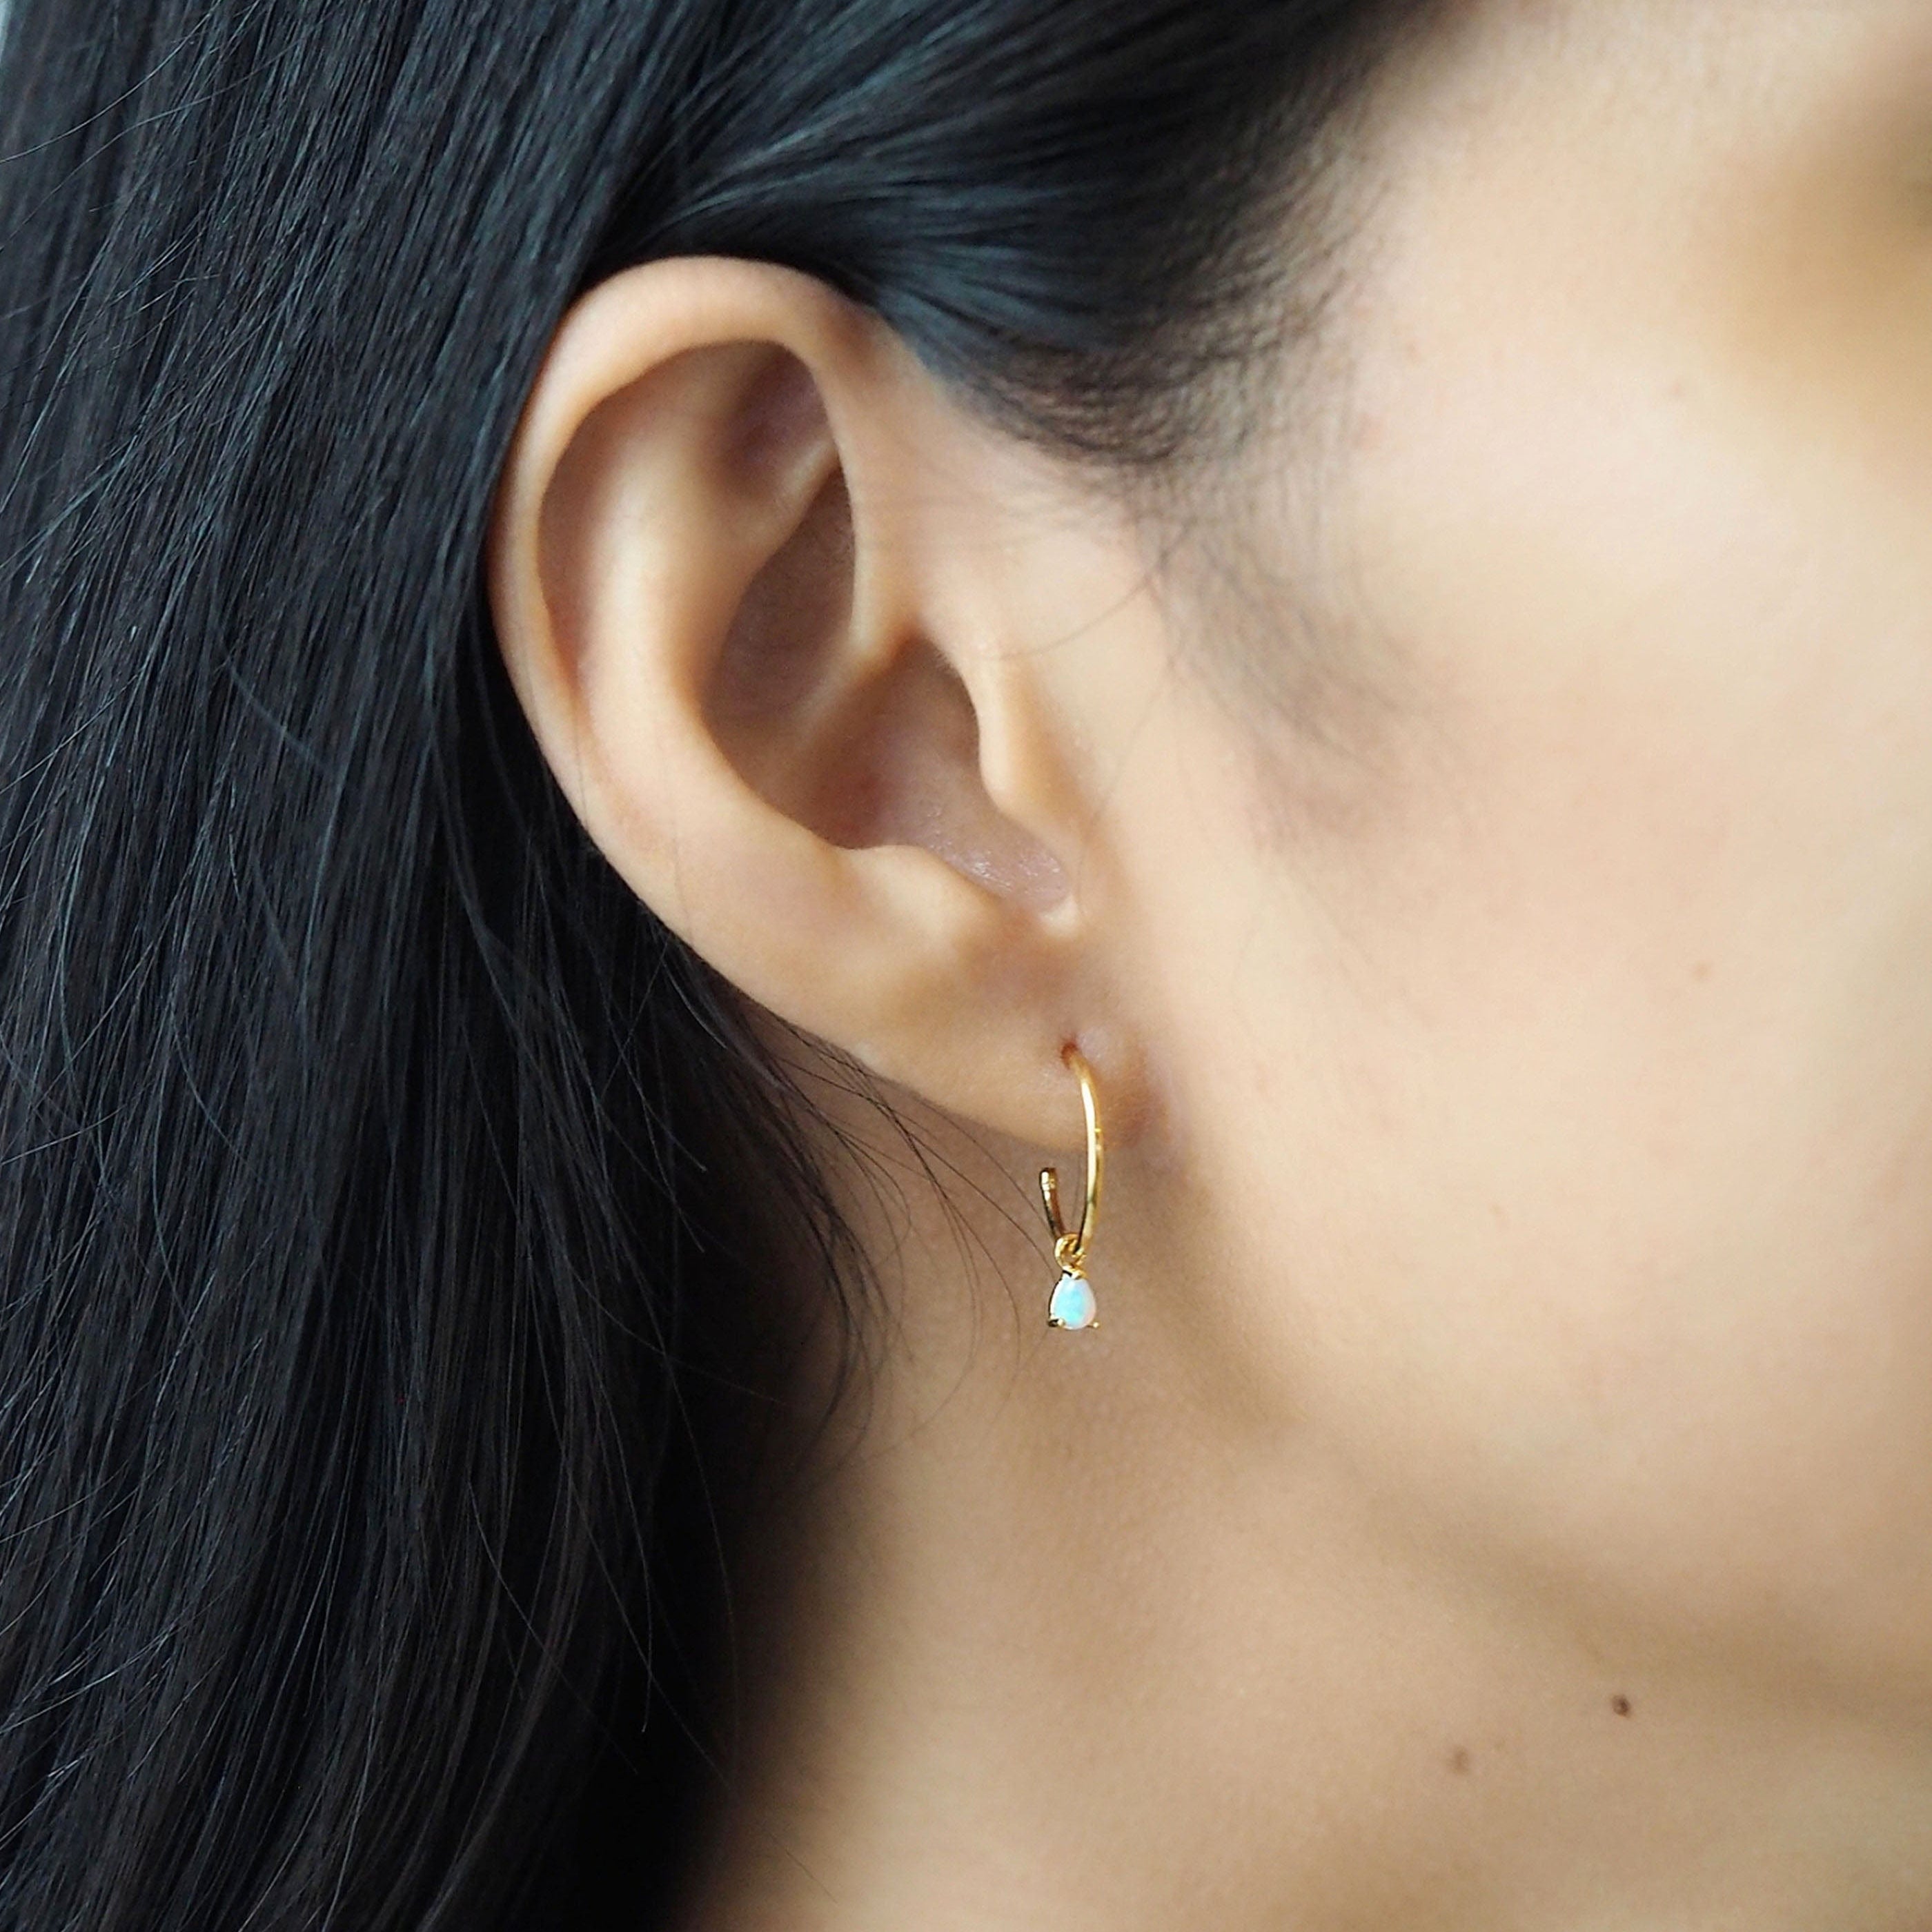 TAI JEWELRY Earrings Opal Tear Drop Dangle Hoops